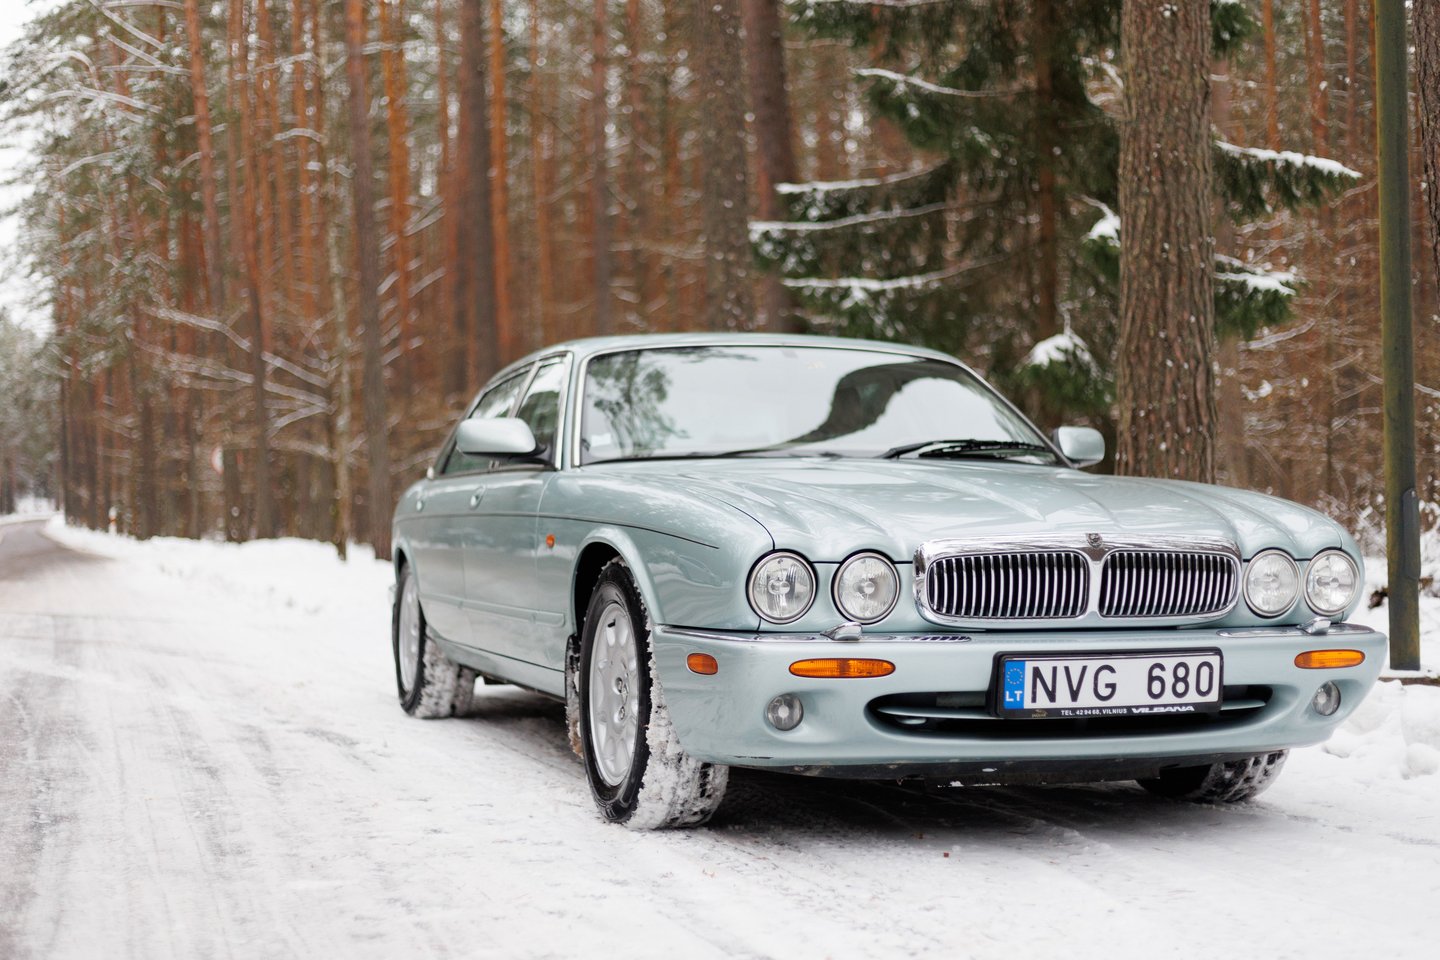 G.Kėvišas džiaugiasi neseniai restauruotu „Jaguar Sovereign“, bet juo važinėja tik retomis progomis.<br>T.Bauro nuotr.